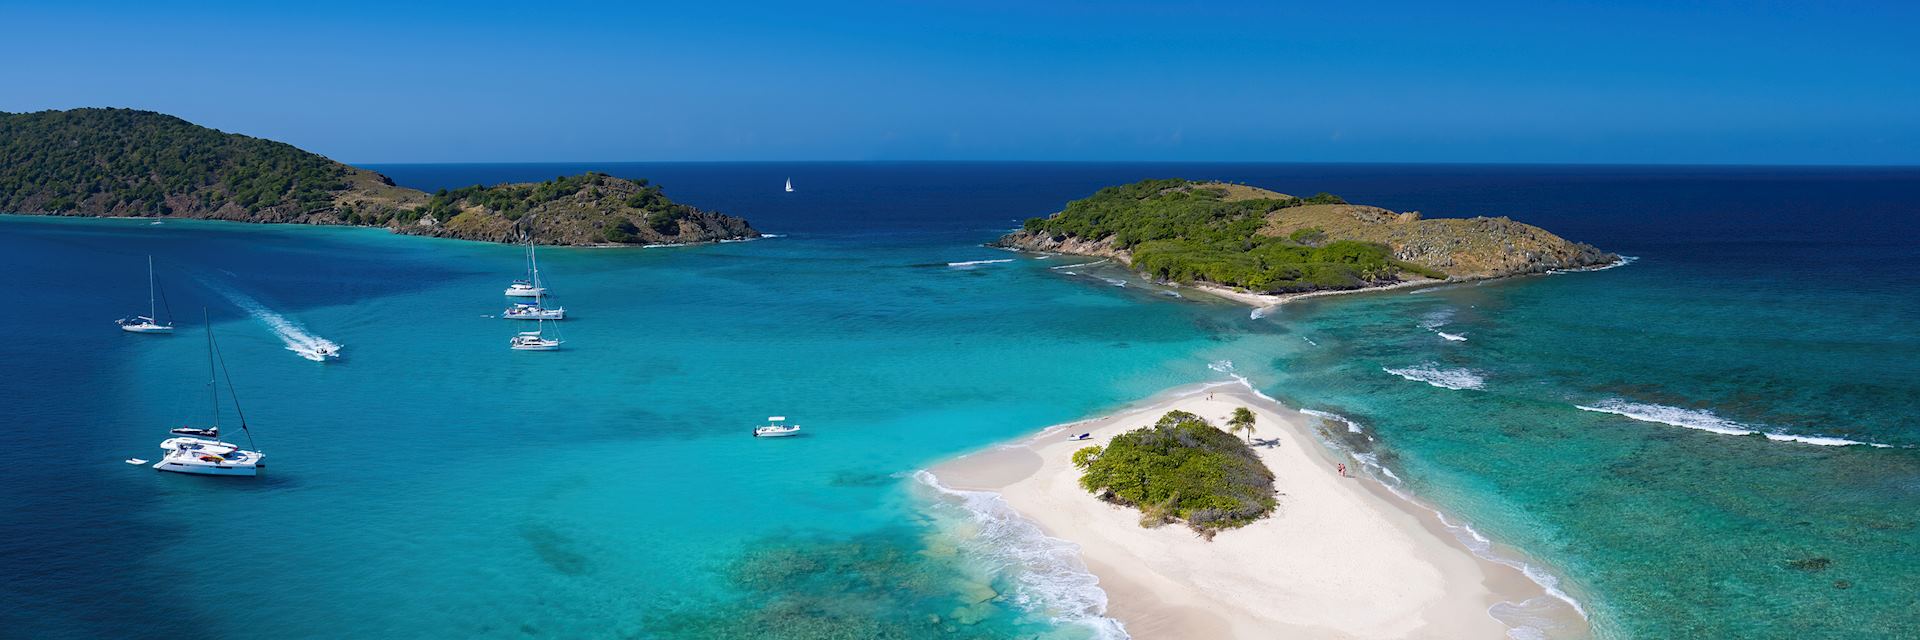 Sandy Spit Island in the British Virgin Islands